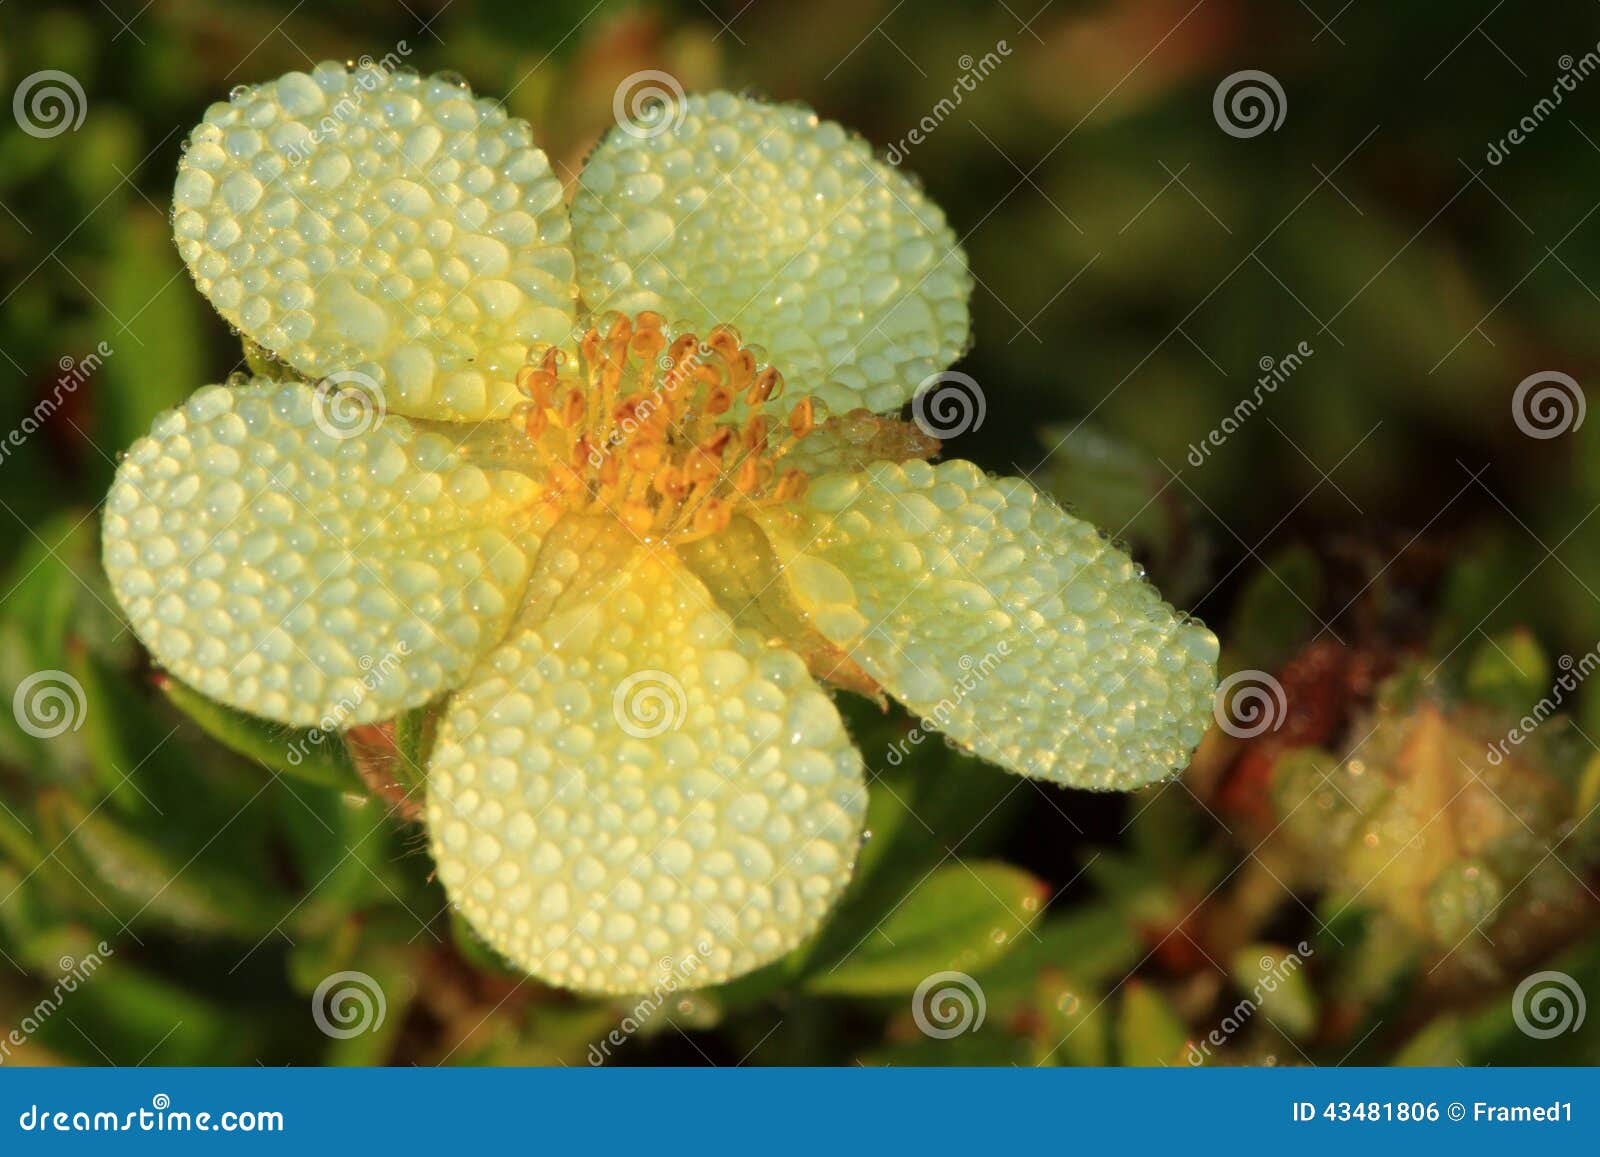 shrubby cinquefoil flower